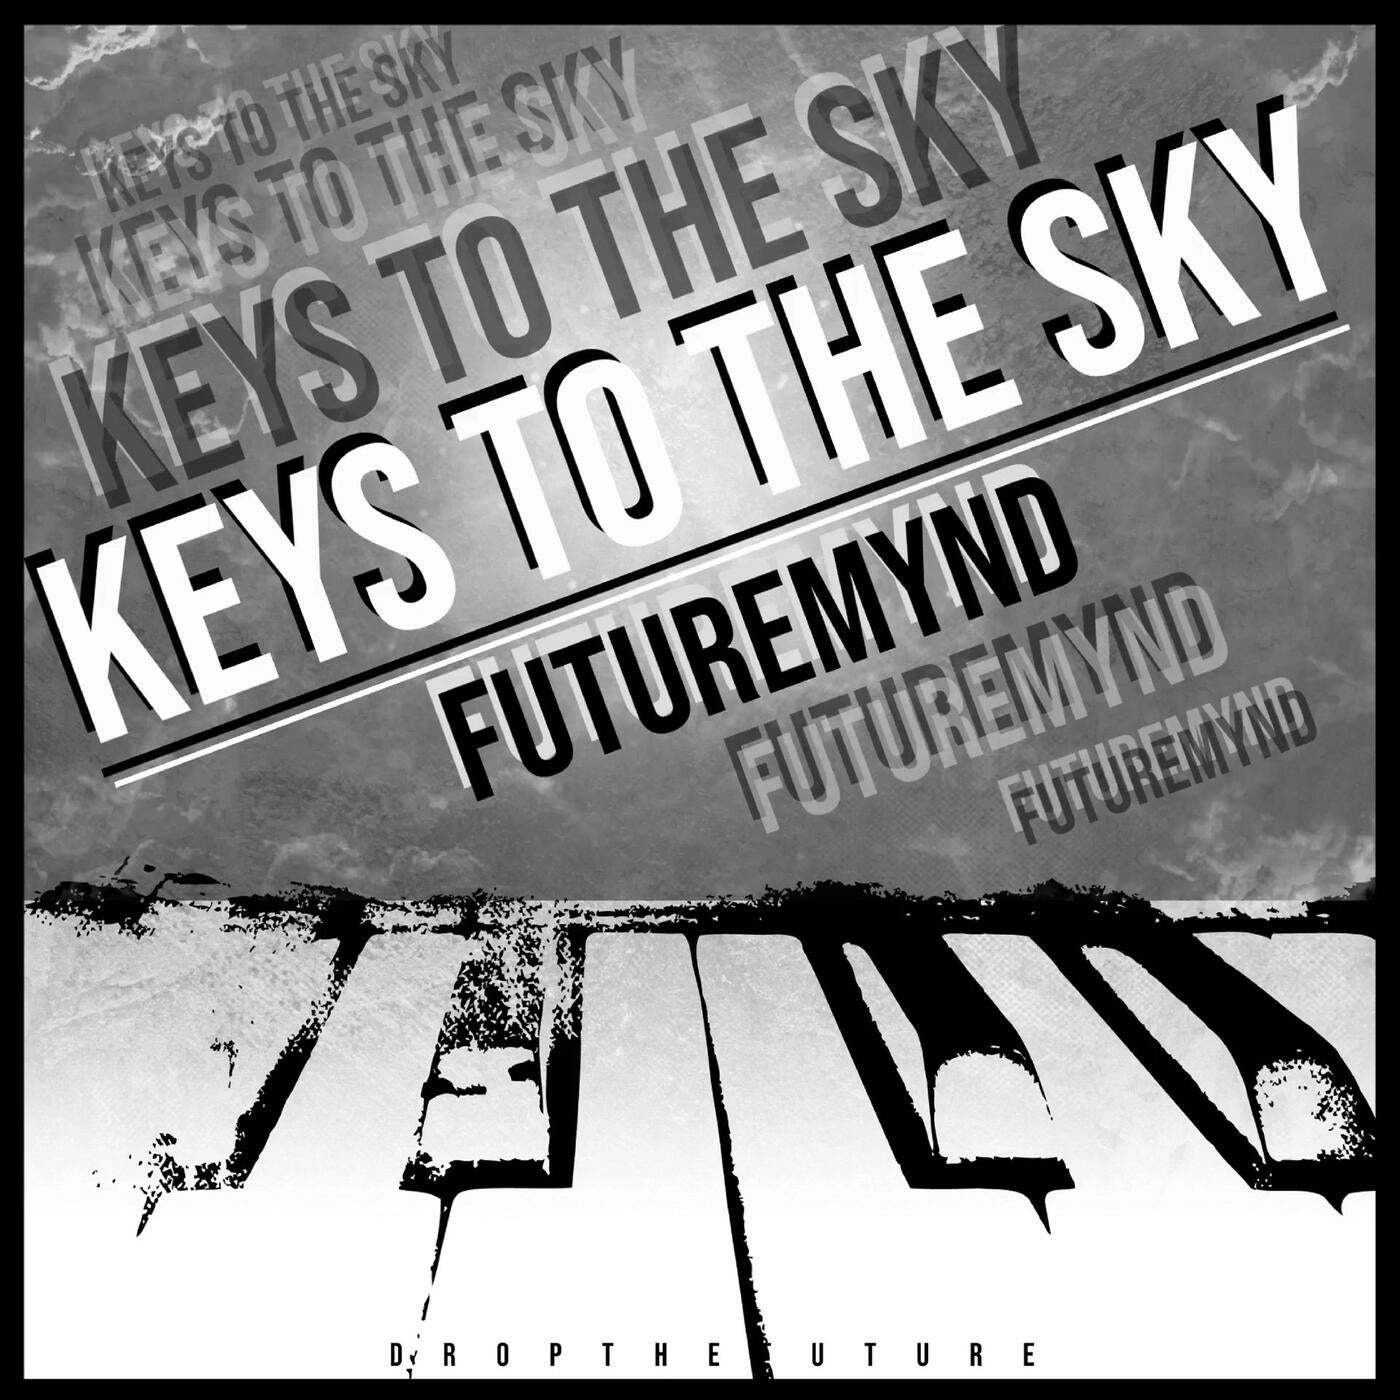 Keys to the Sky